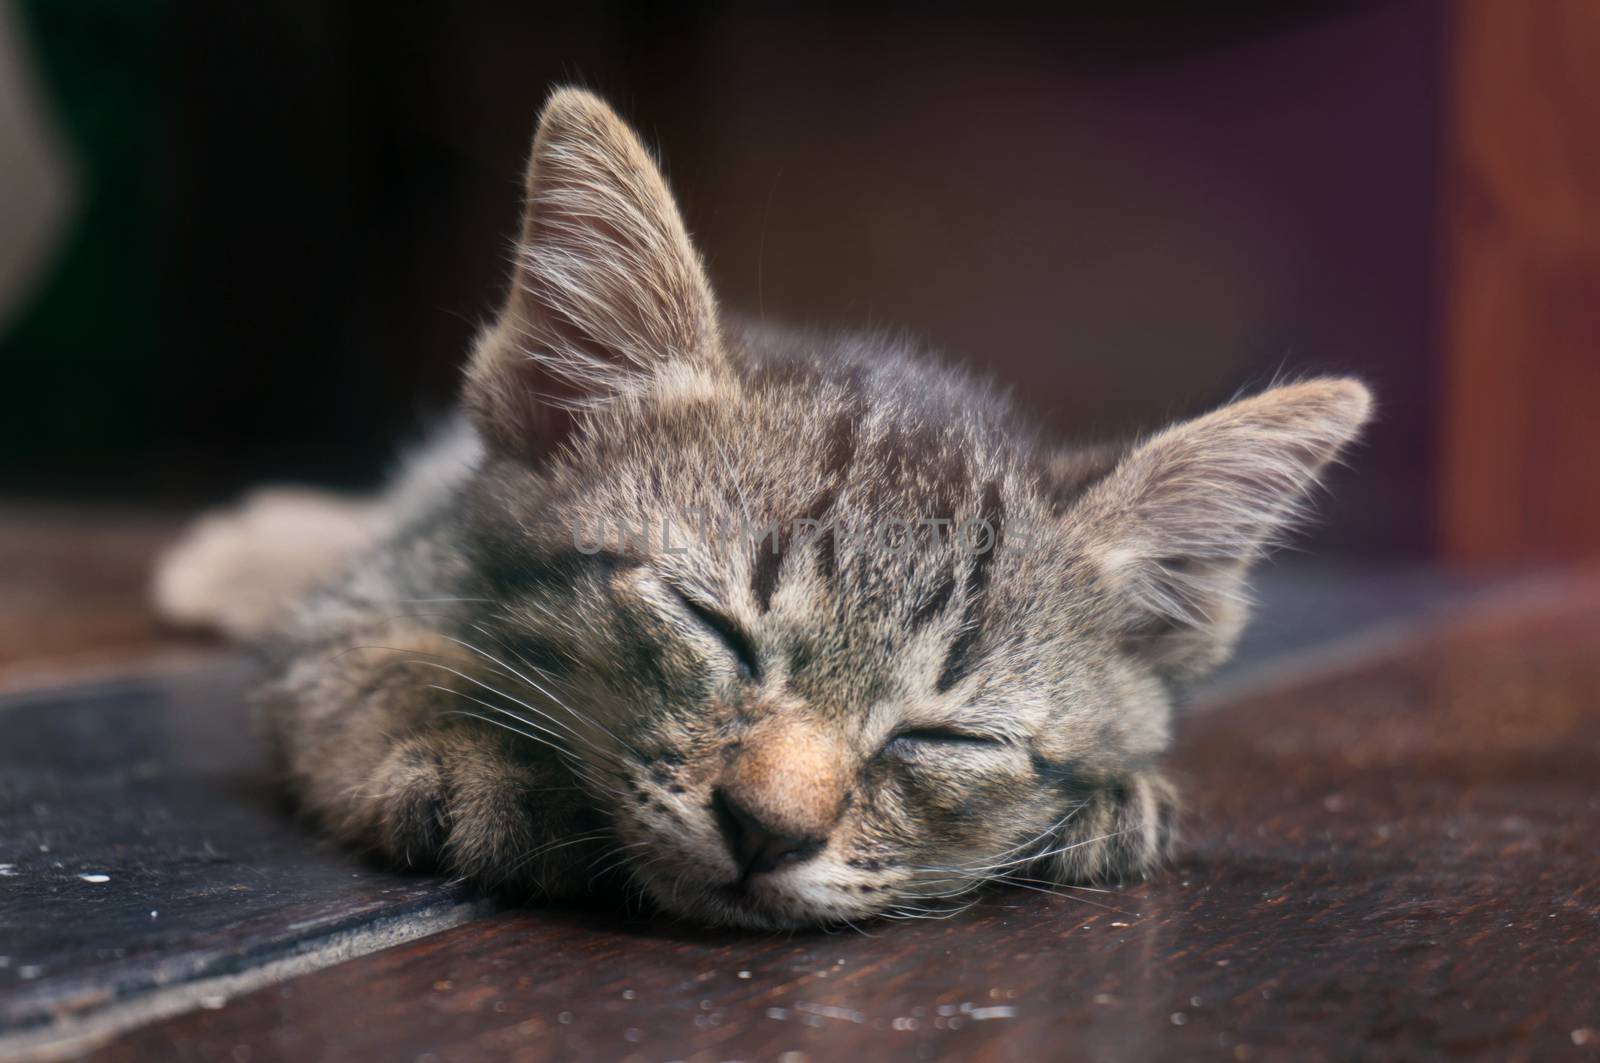 Lazy street little tabby kitten.  Cat  laying on wooden floor wi by peandben